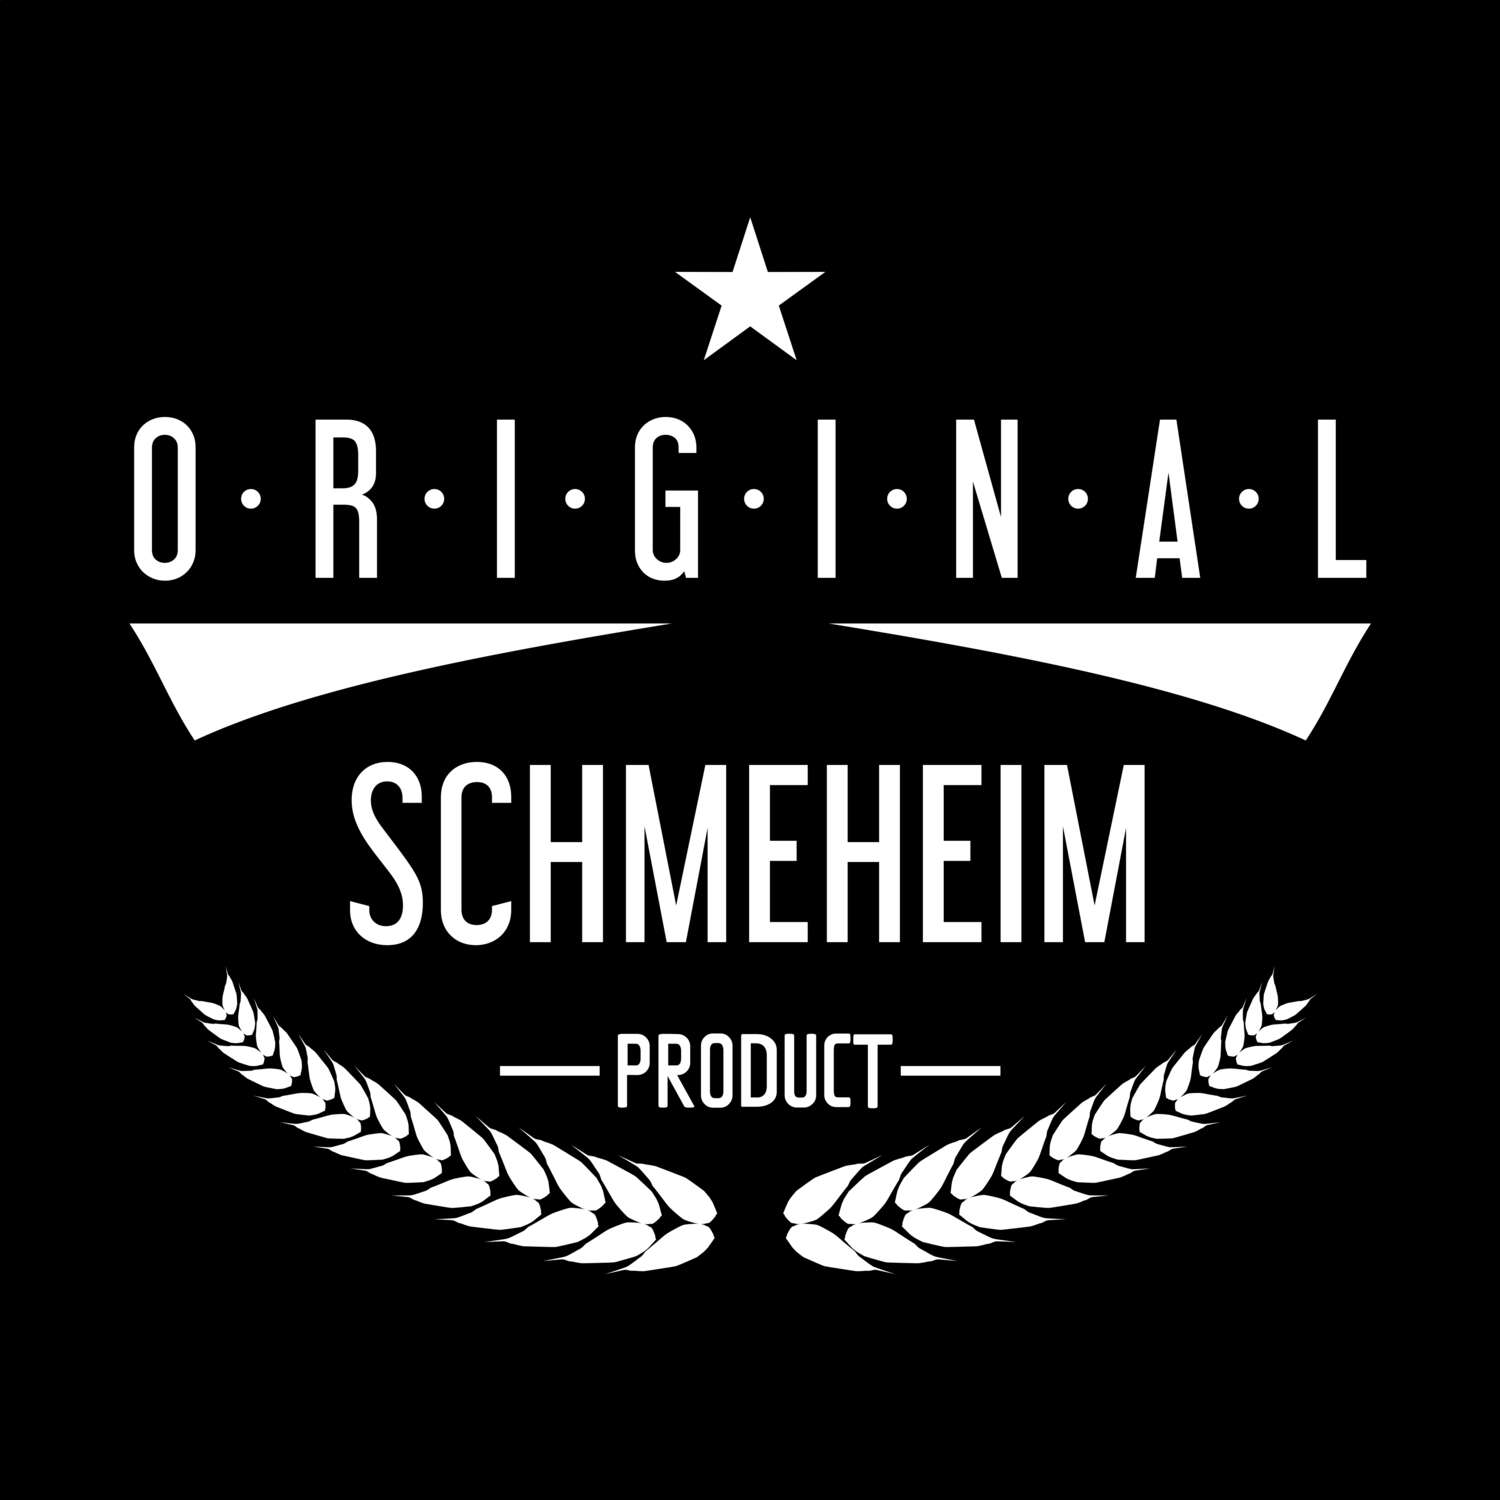 Schmeheim T-Shirt »Original Product«